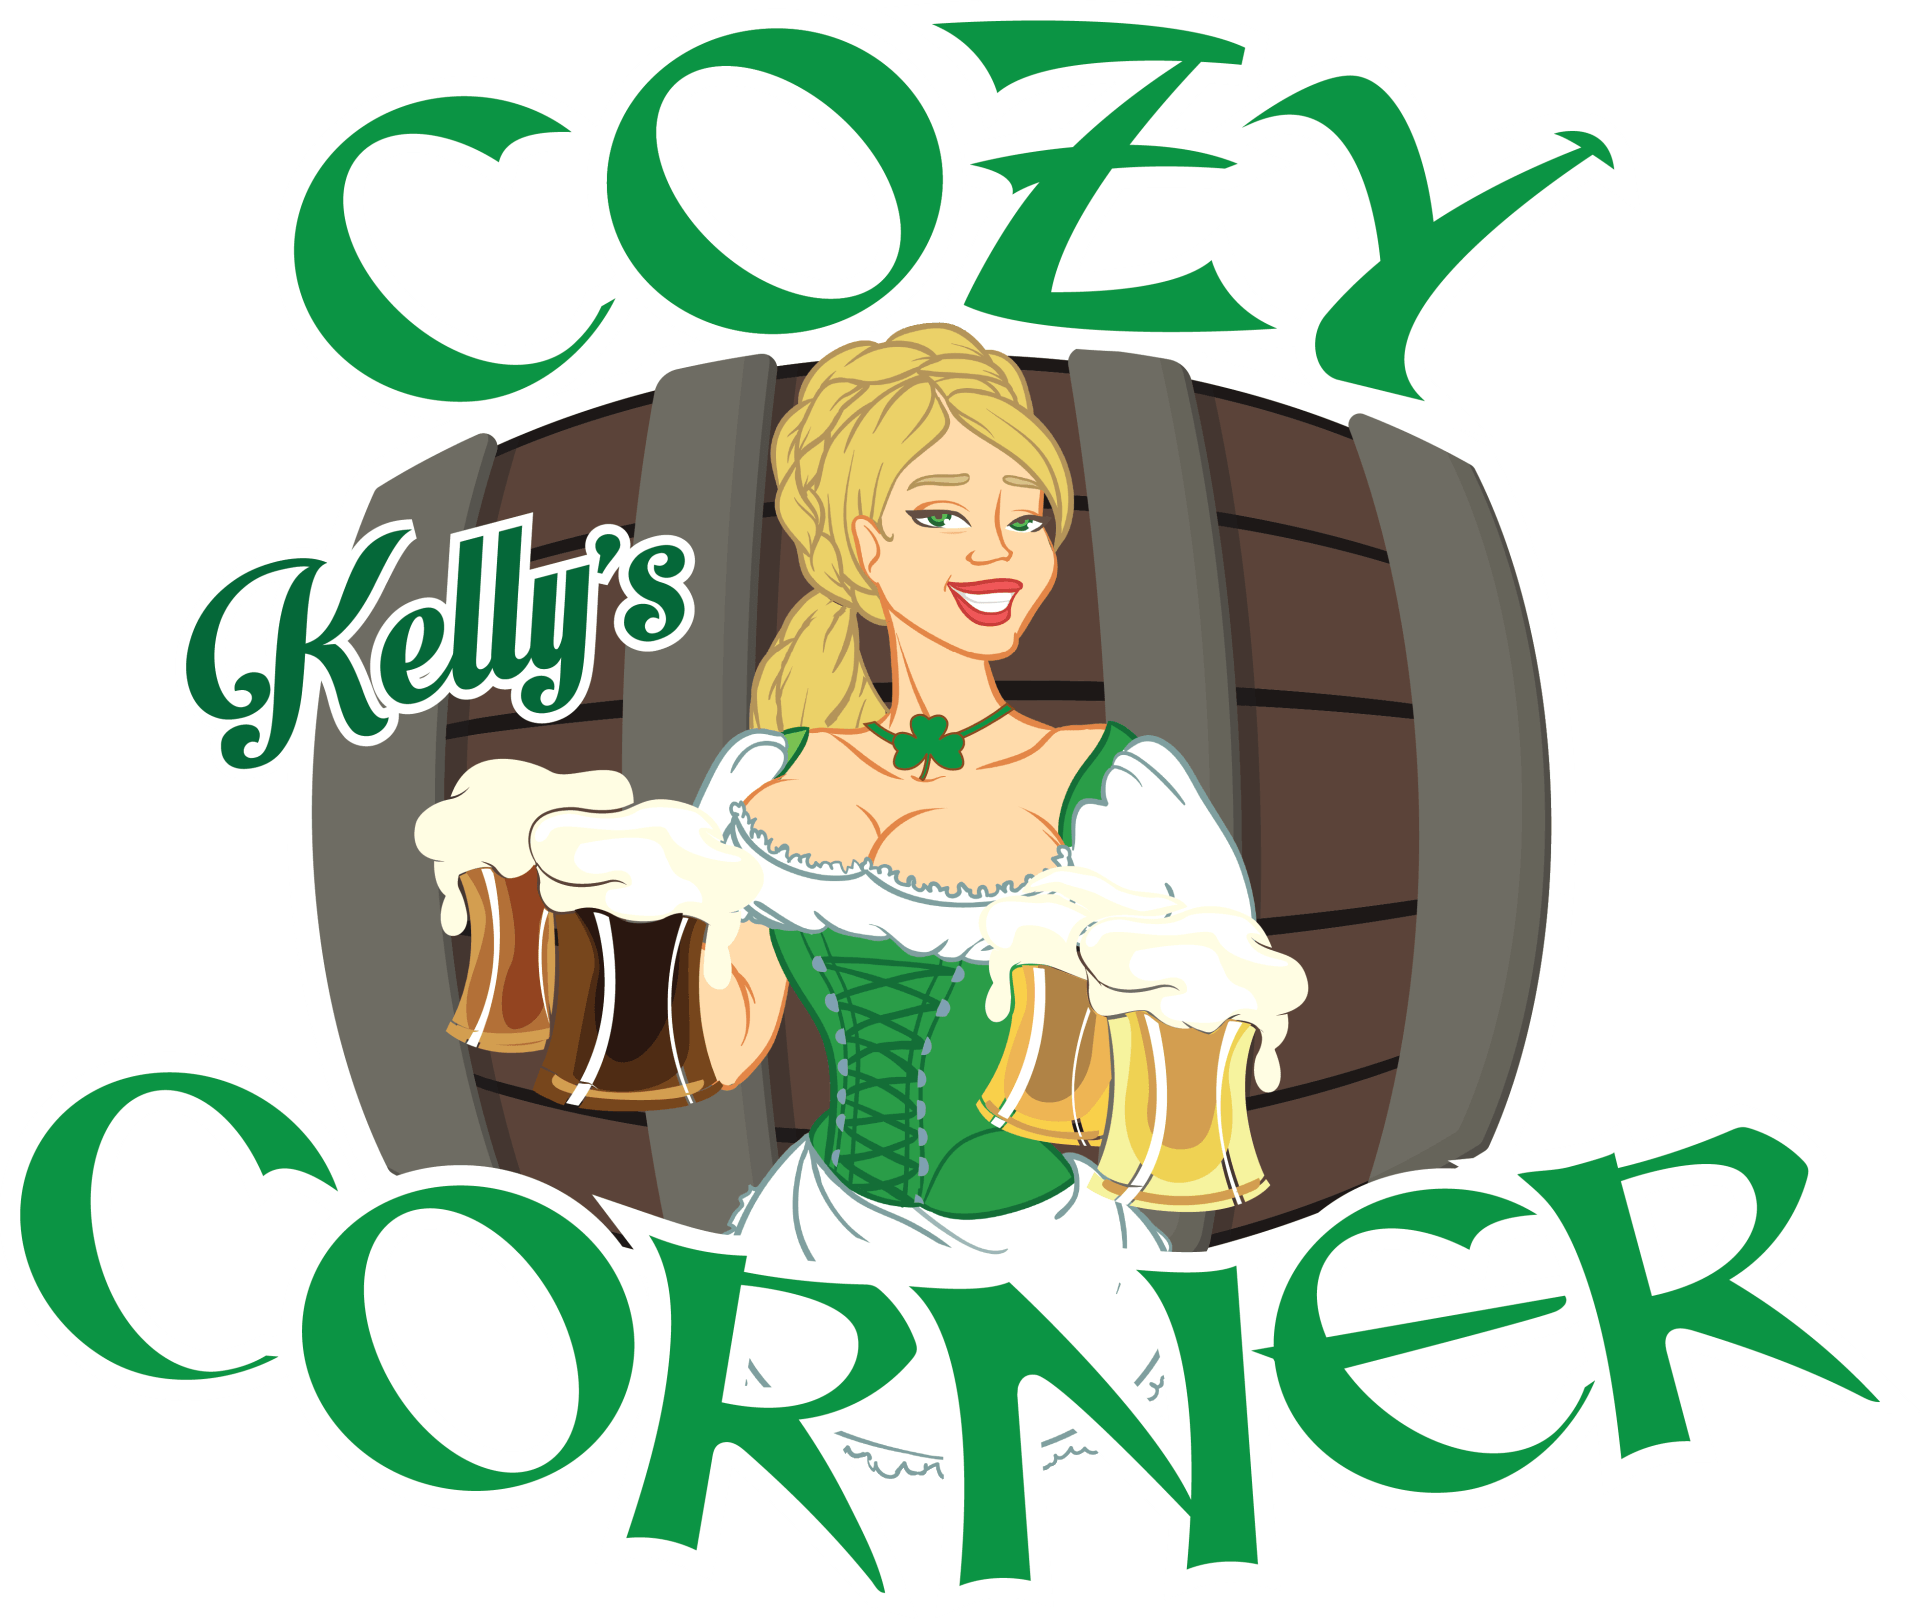 Kelly's Cozy Corner